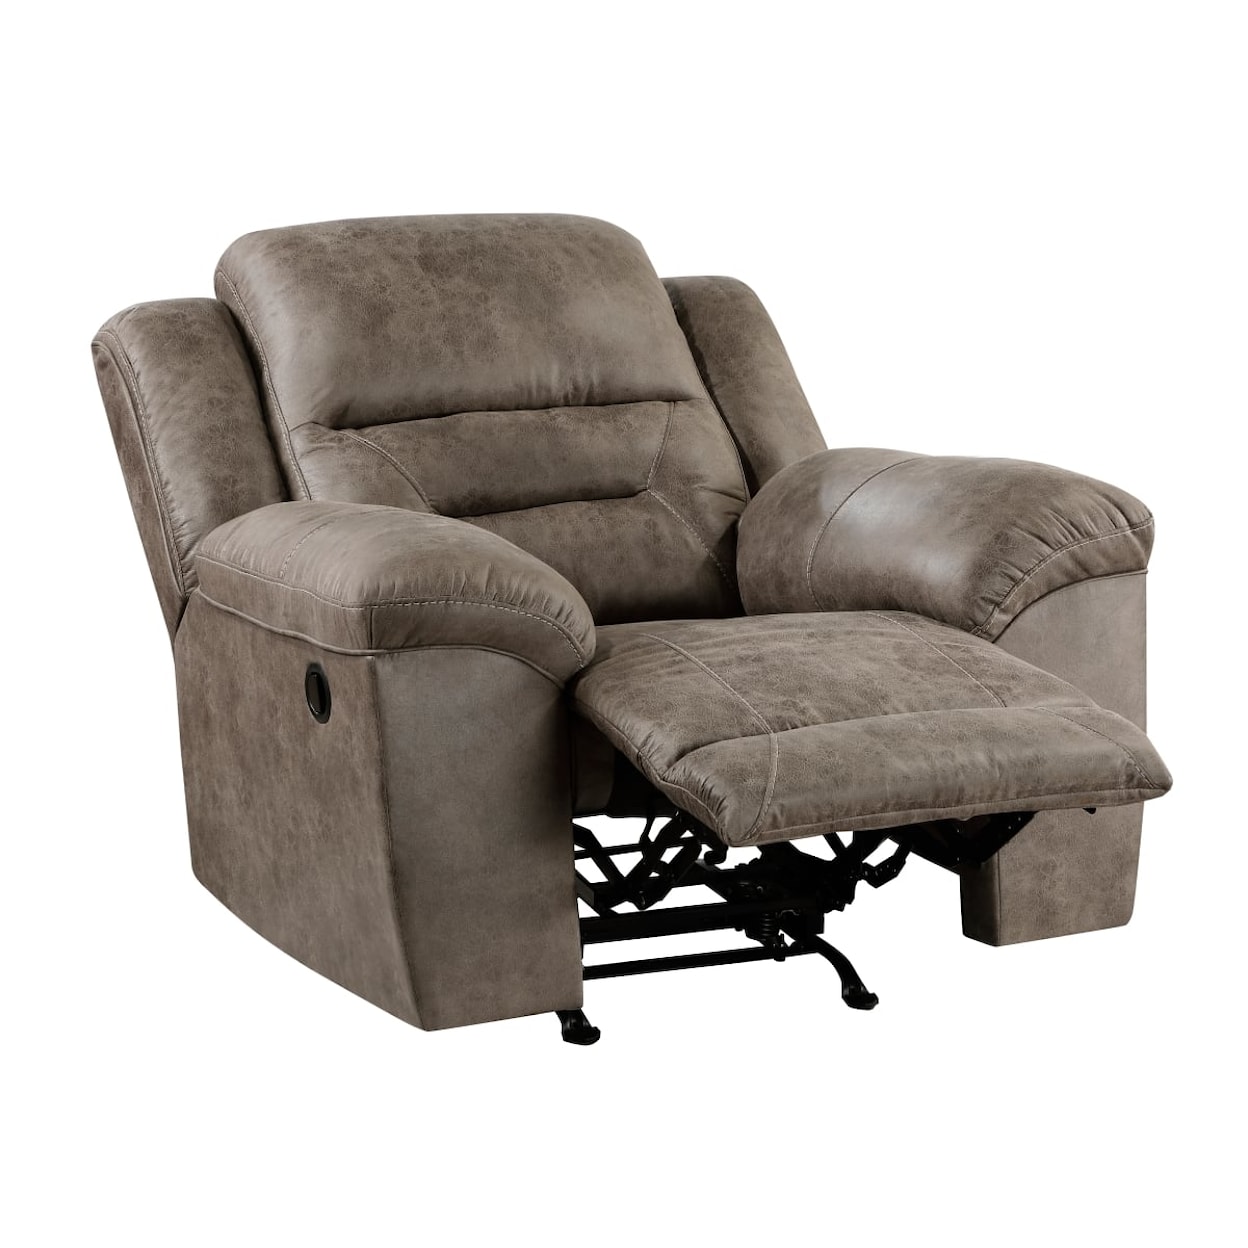 Homelegance Furniture Hazen Rocker Reclining Chair